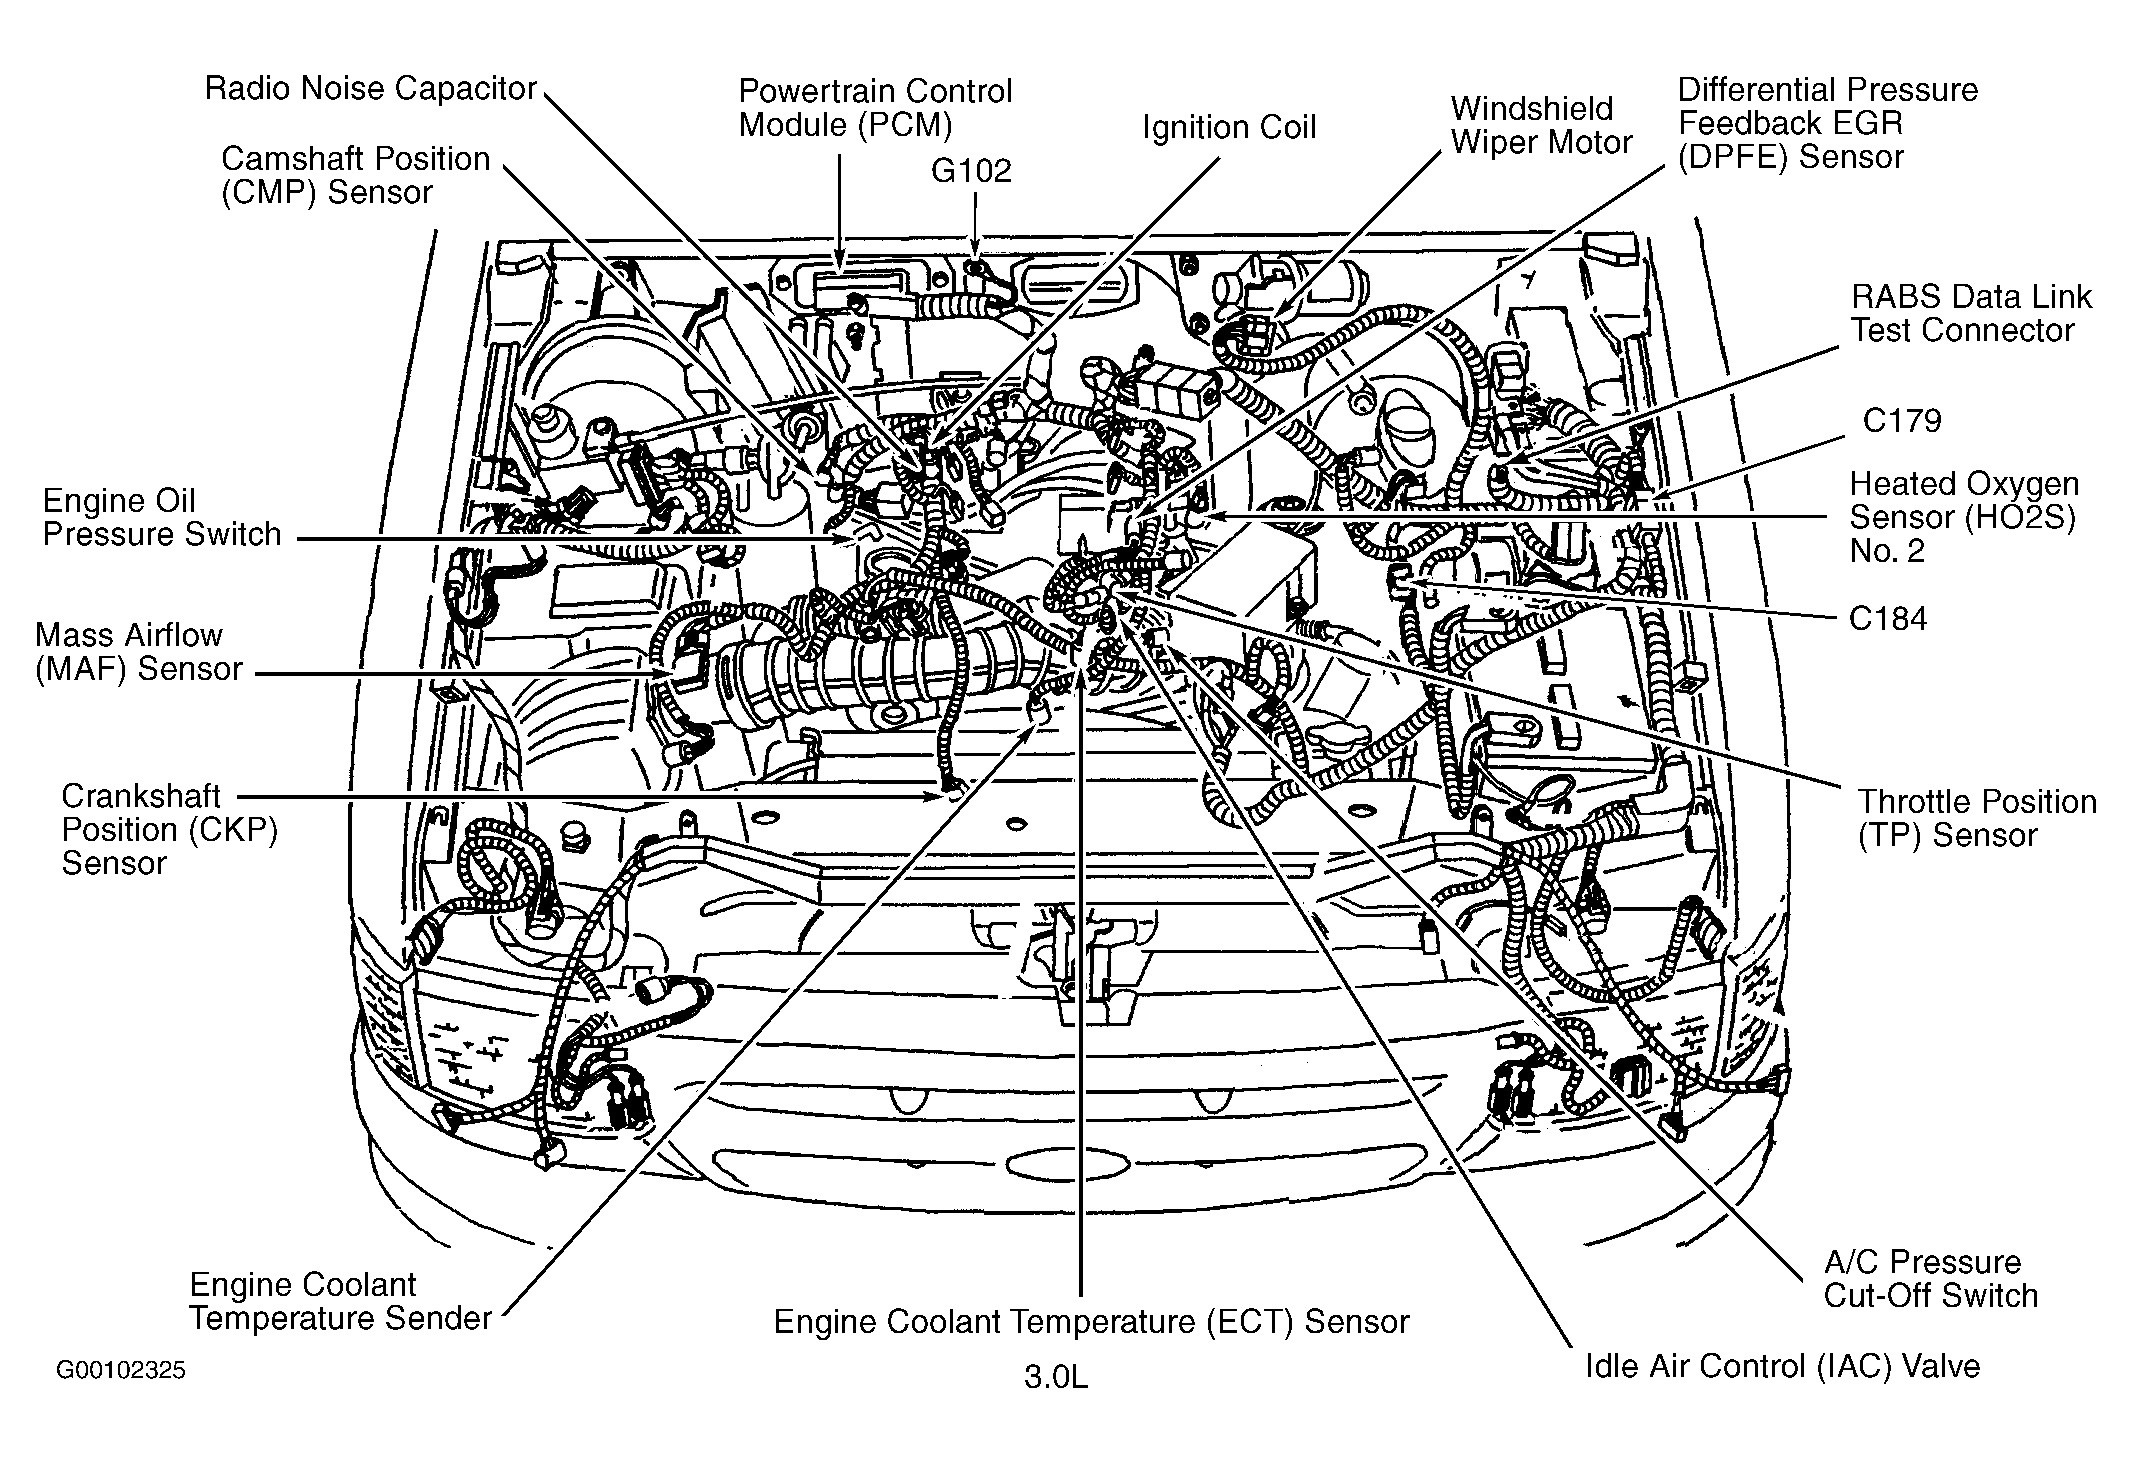 2004 ford Ranger Engine Diagram ford Ranger 3 0 V6 Engine Diagram ford Wiring Diagrams Instructions Of 2004 ford Ranger Engine Diagram